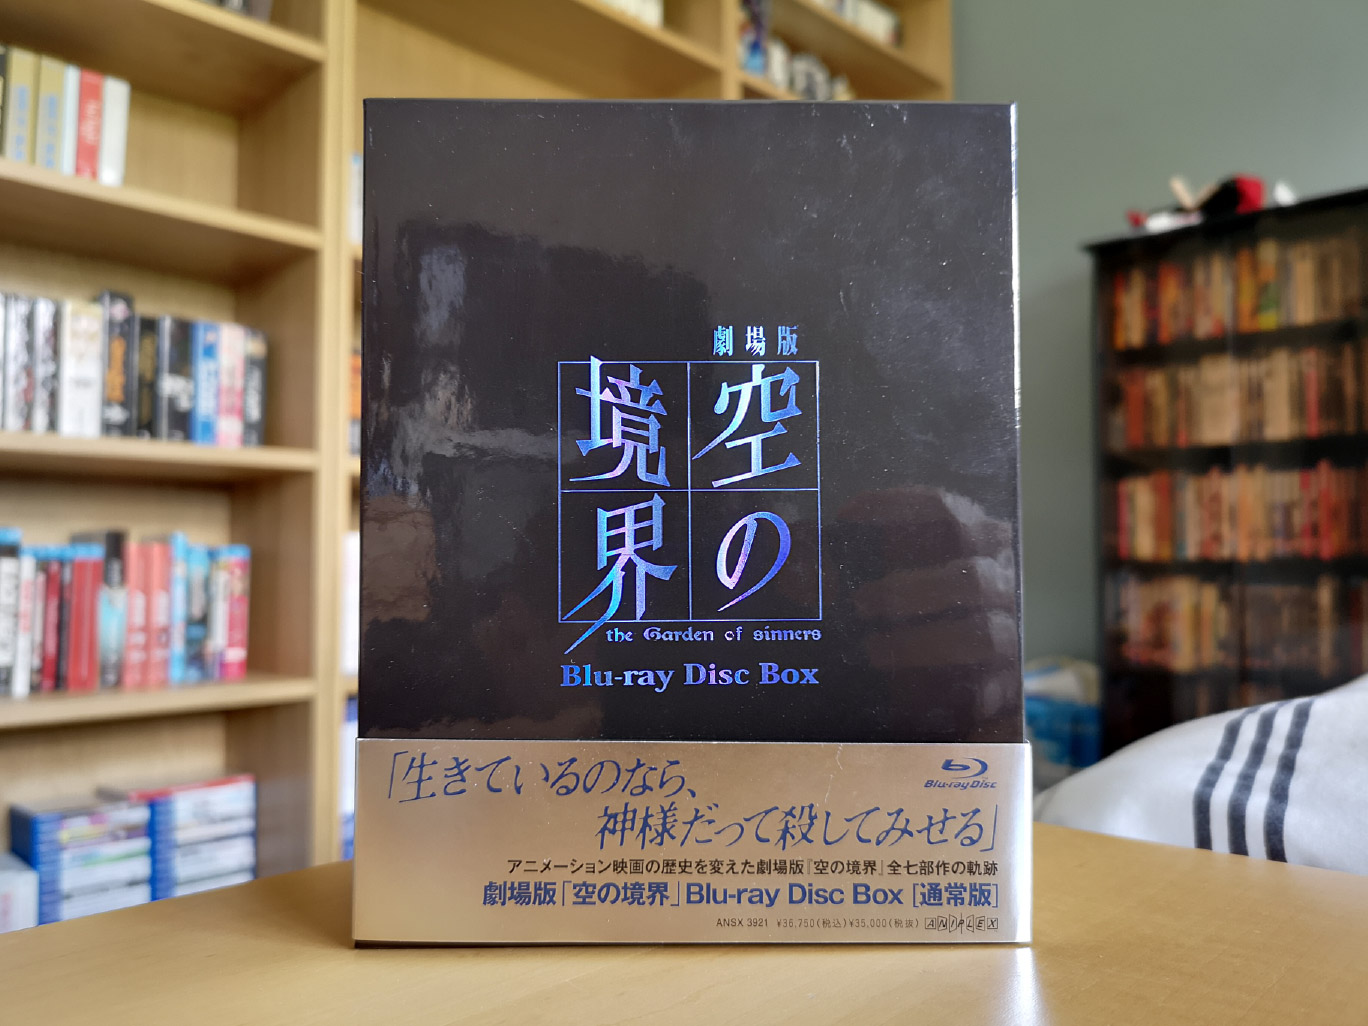 Kara no Kyoukai: The Garden of Sinners (Blu-ray Disc Box) Unboxing